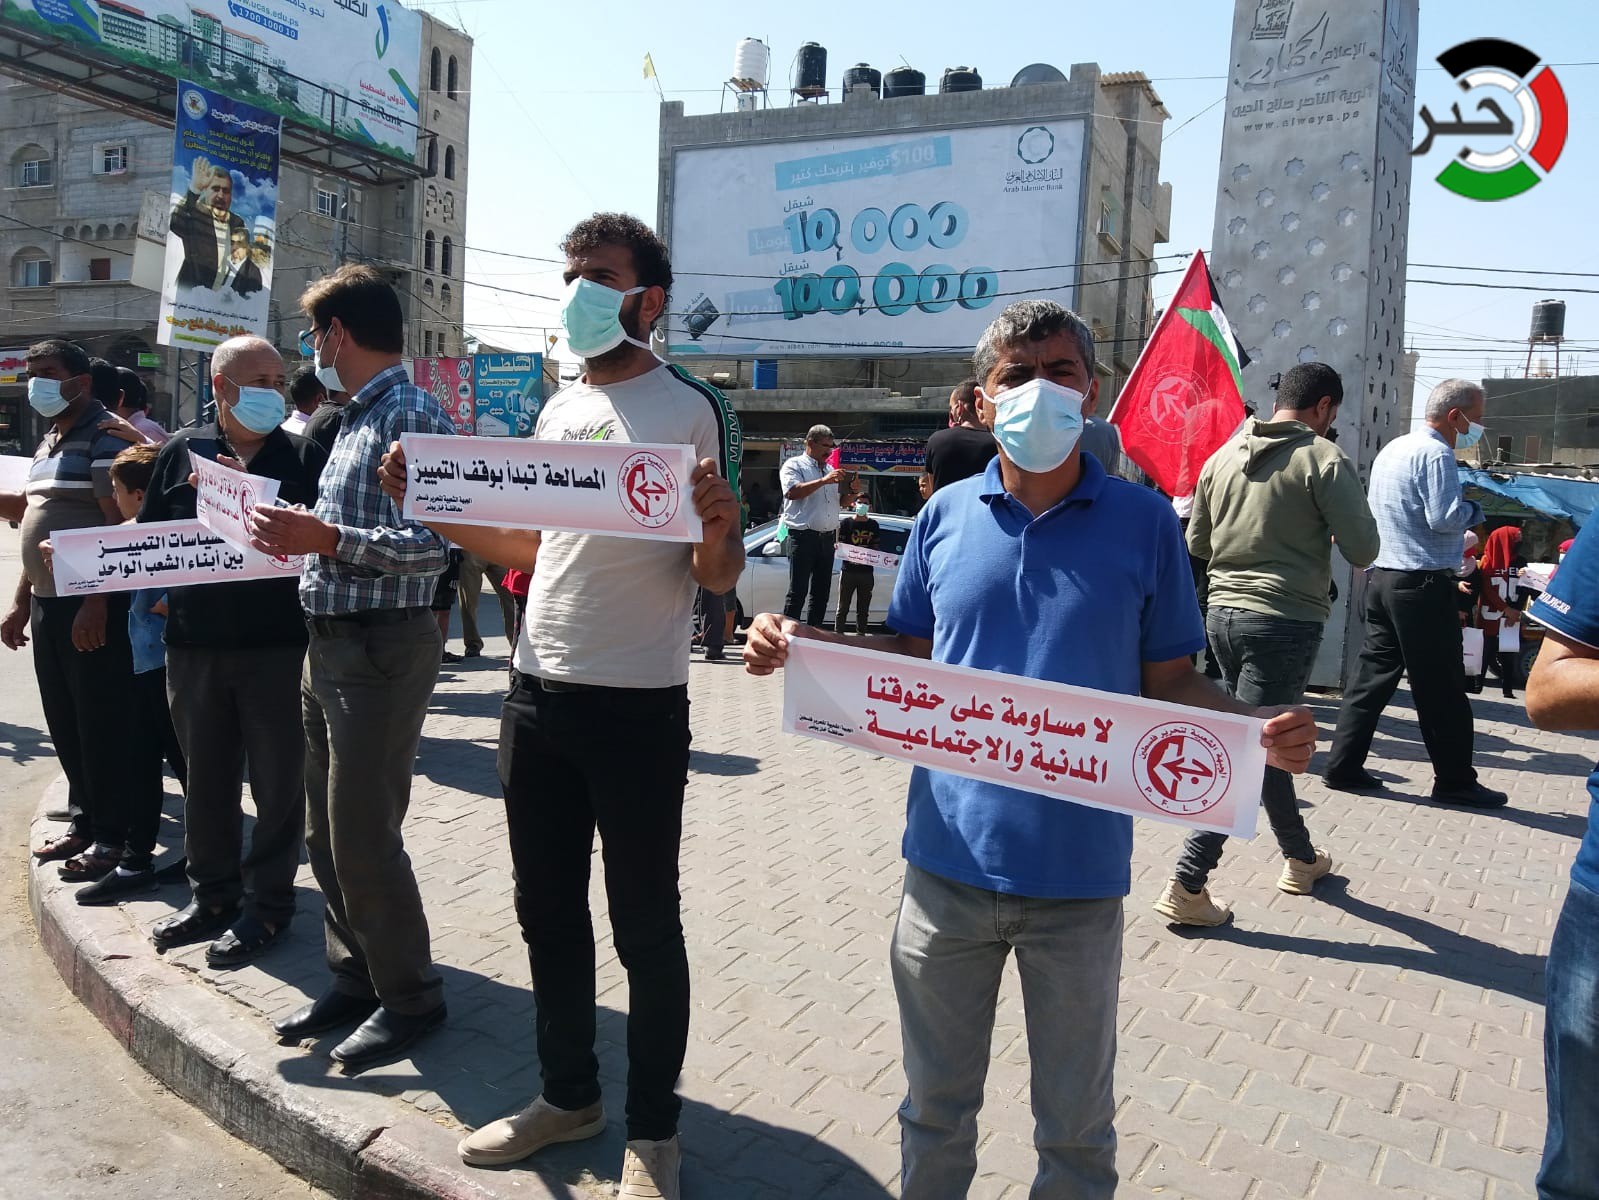 بالفيديو والصور: الشعبية تُنظم وقفات احتجاجية للمطالبة بوقف التمييز بين غزّة والضفة